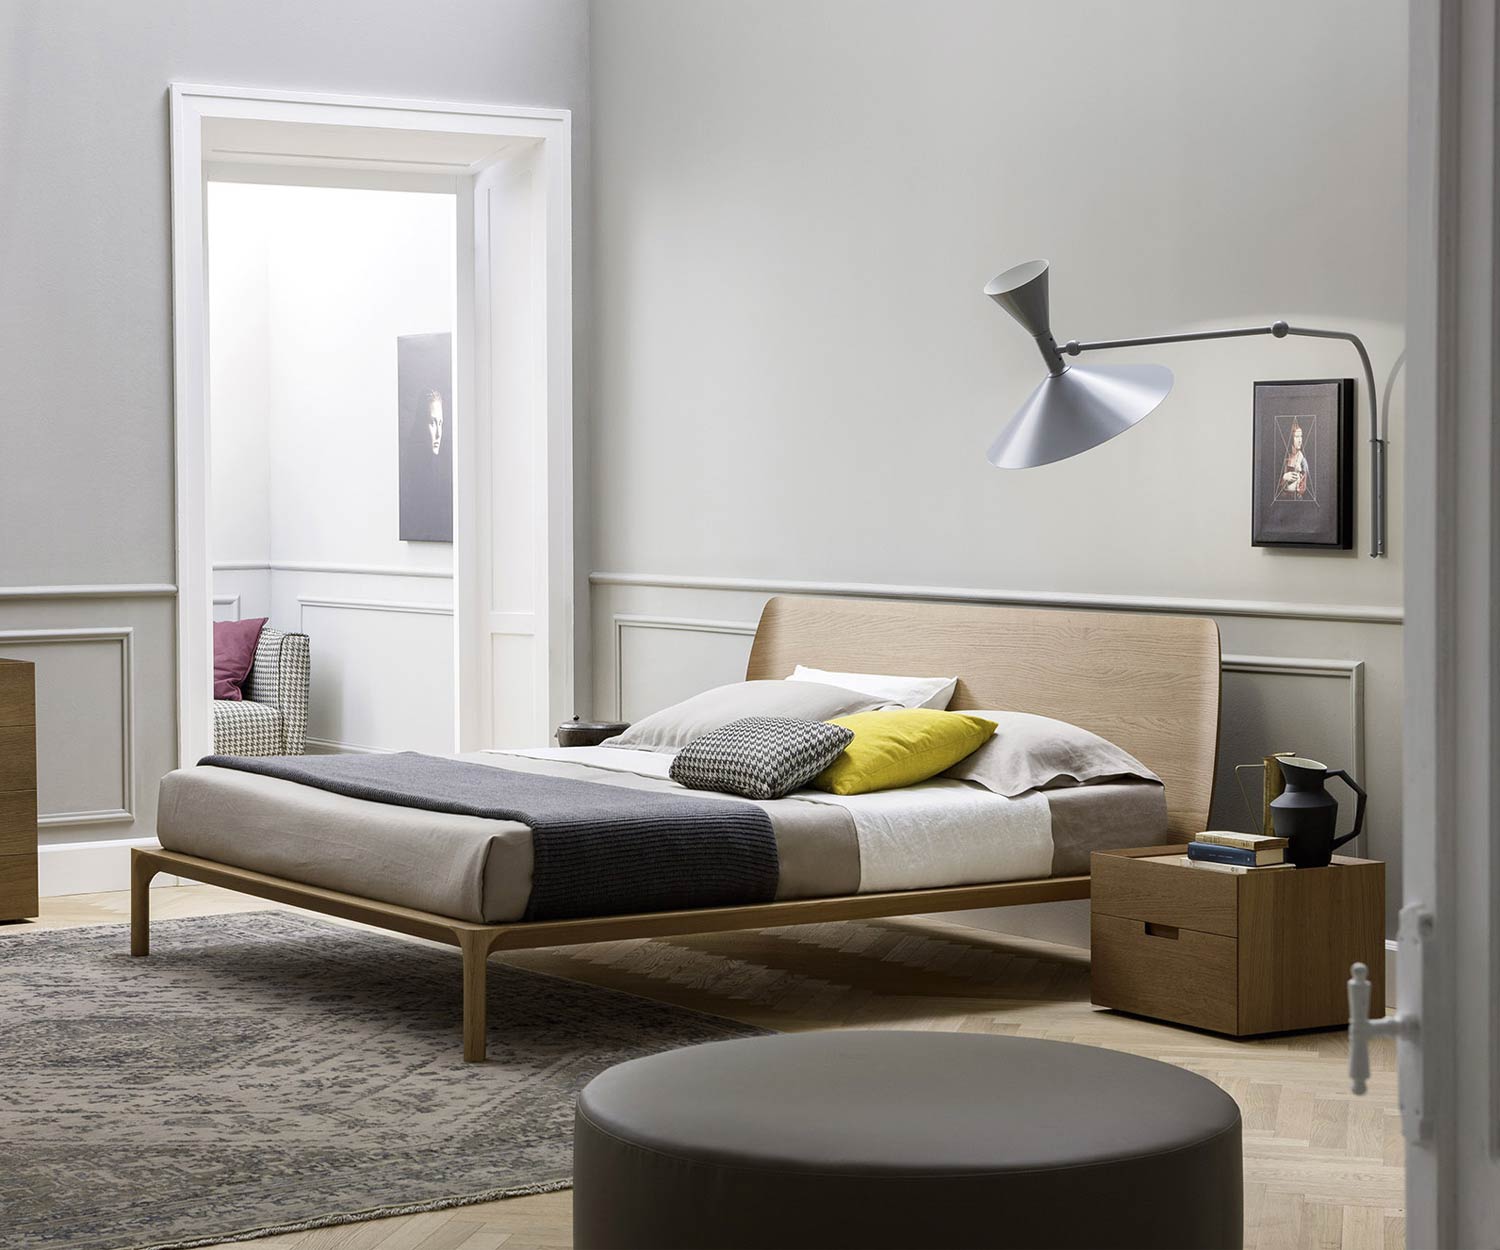 Hochwertiger Design Nachttisch im Schlafzimmer neben Bett zur Ansicht dargeboten in Braun